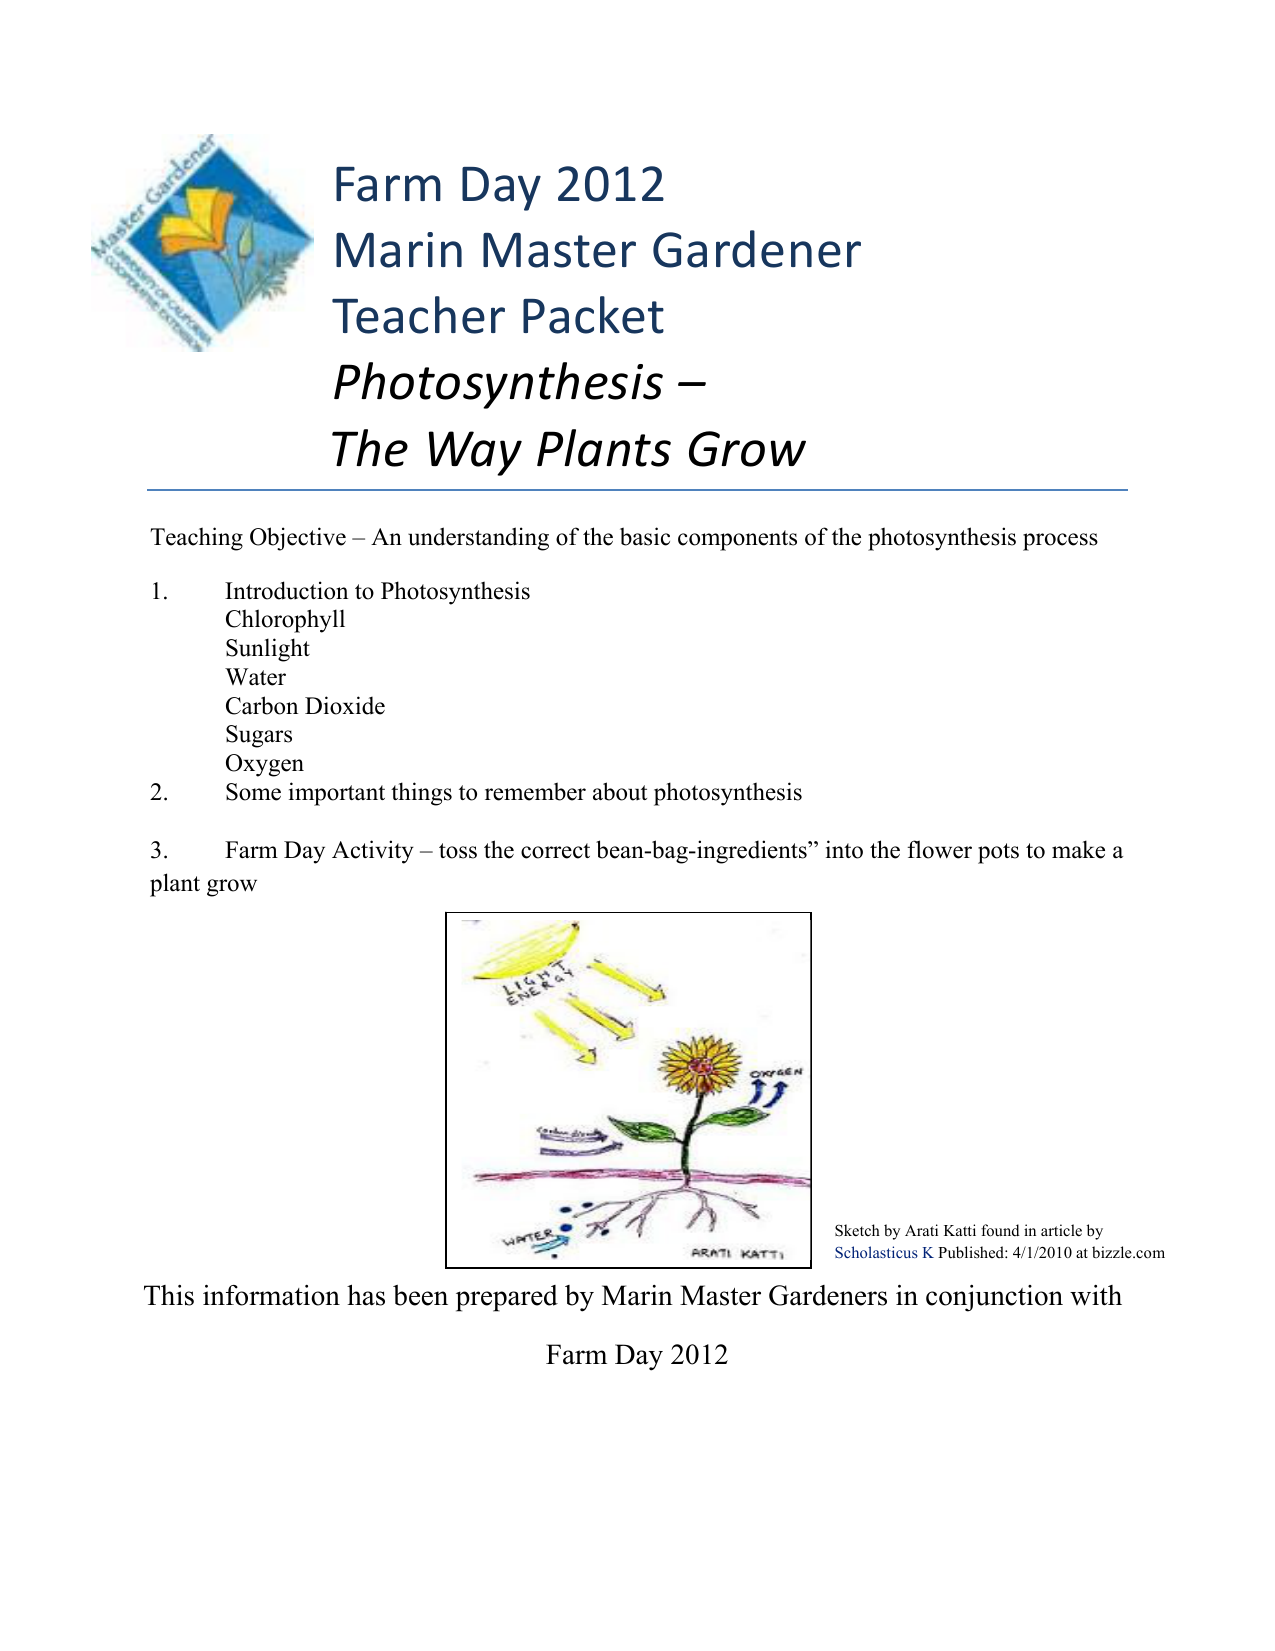 Farm Day 2012 Marin Master Gardener Teacher Packet